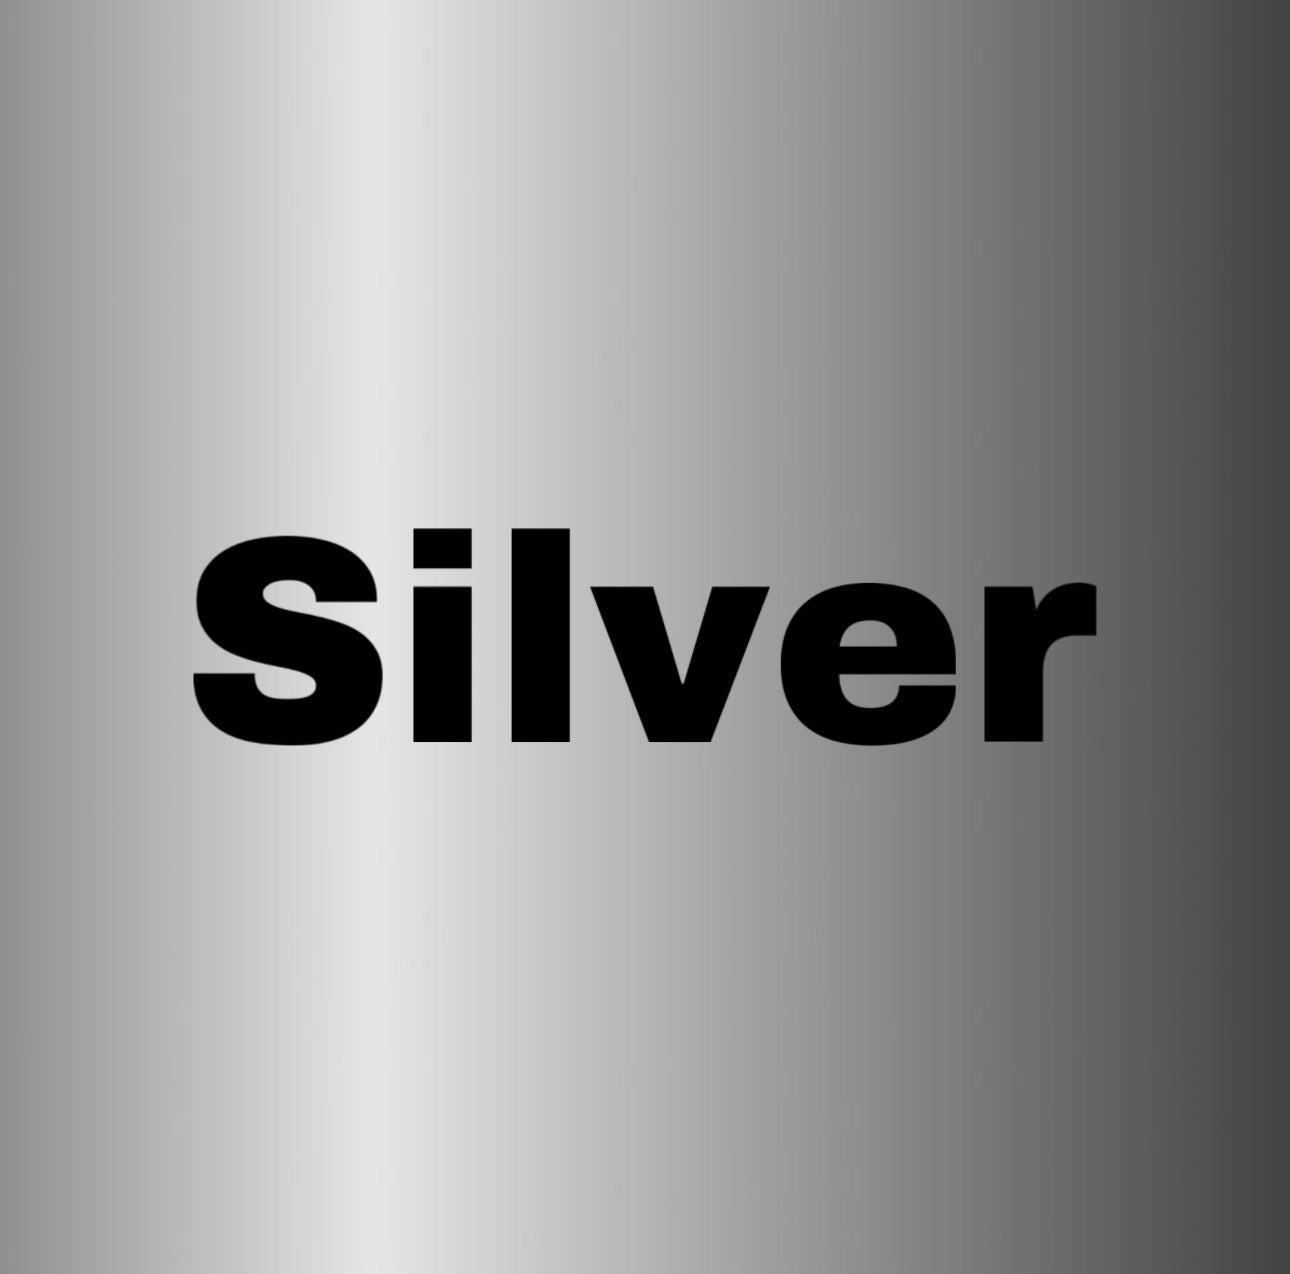 argento-saratogapaintmarker